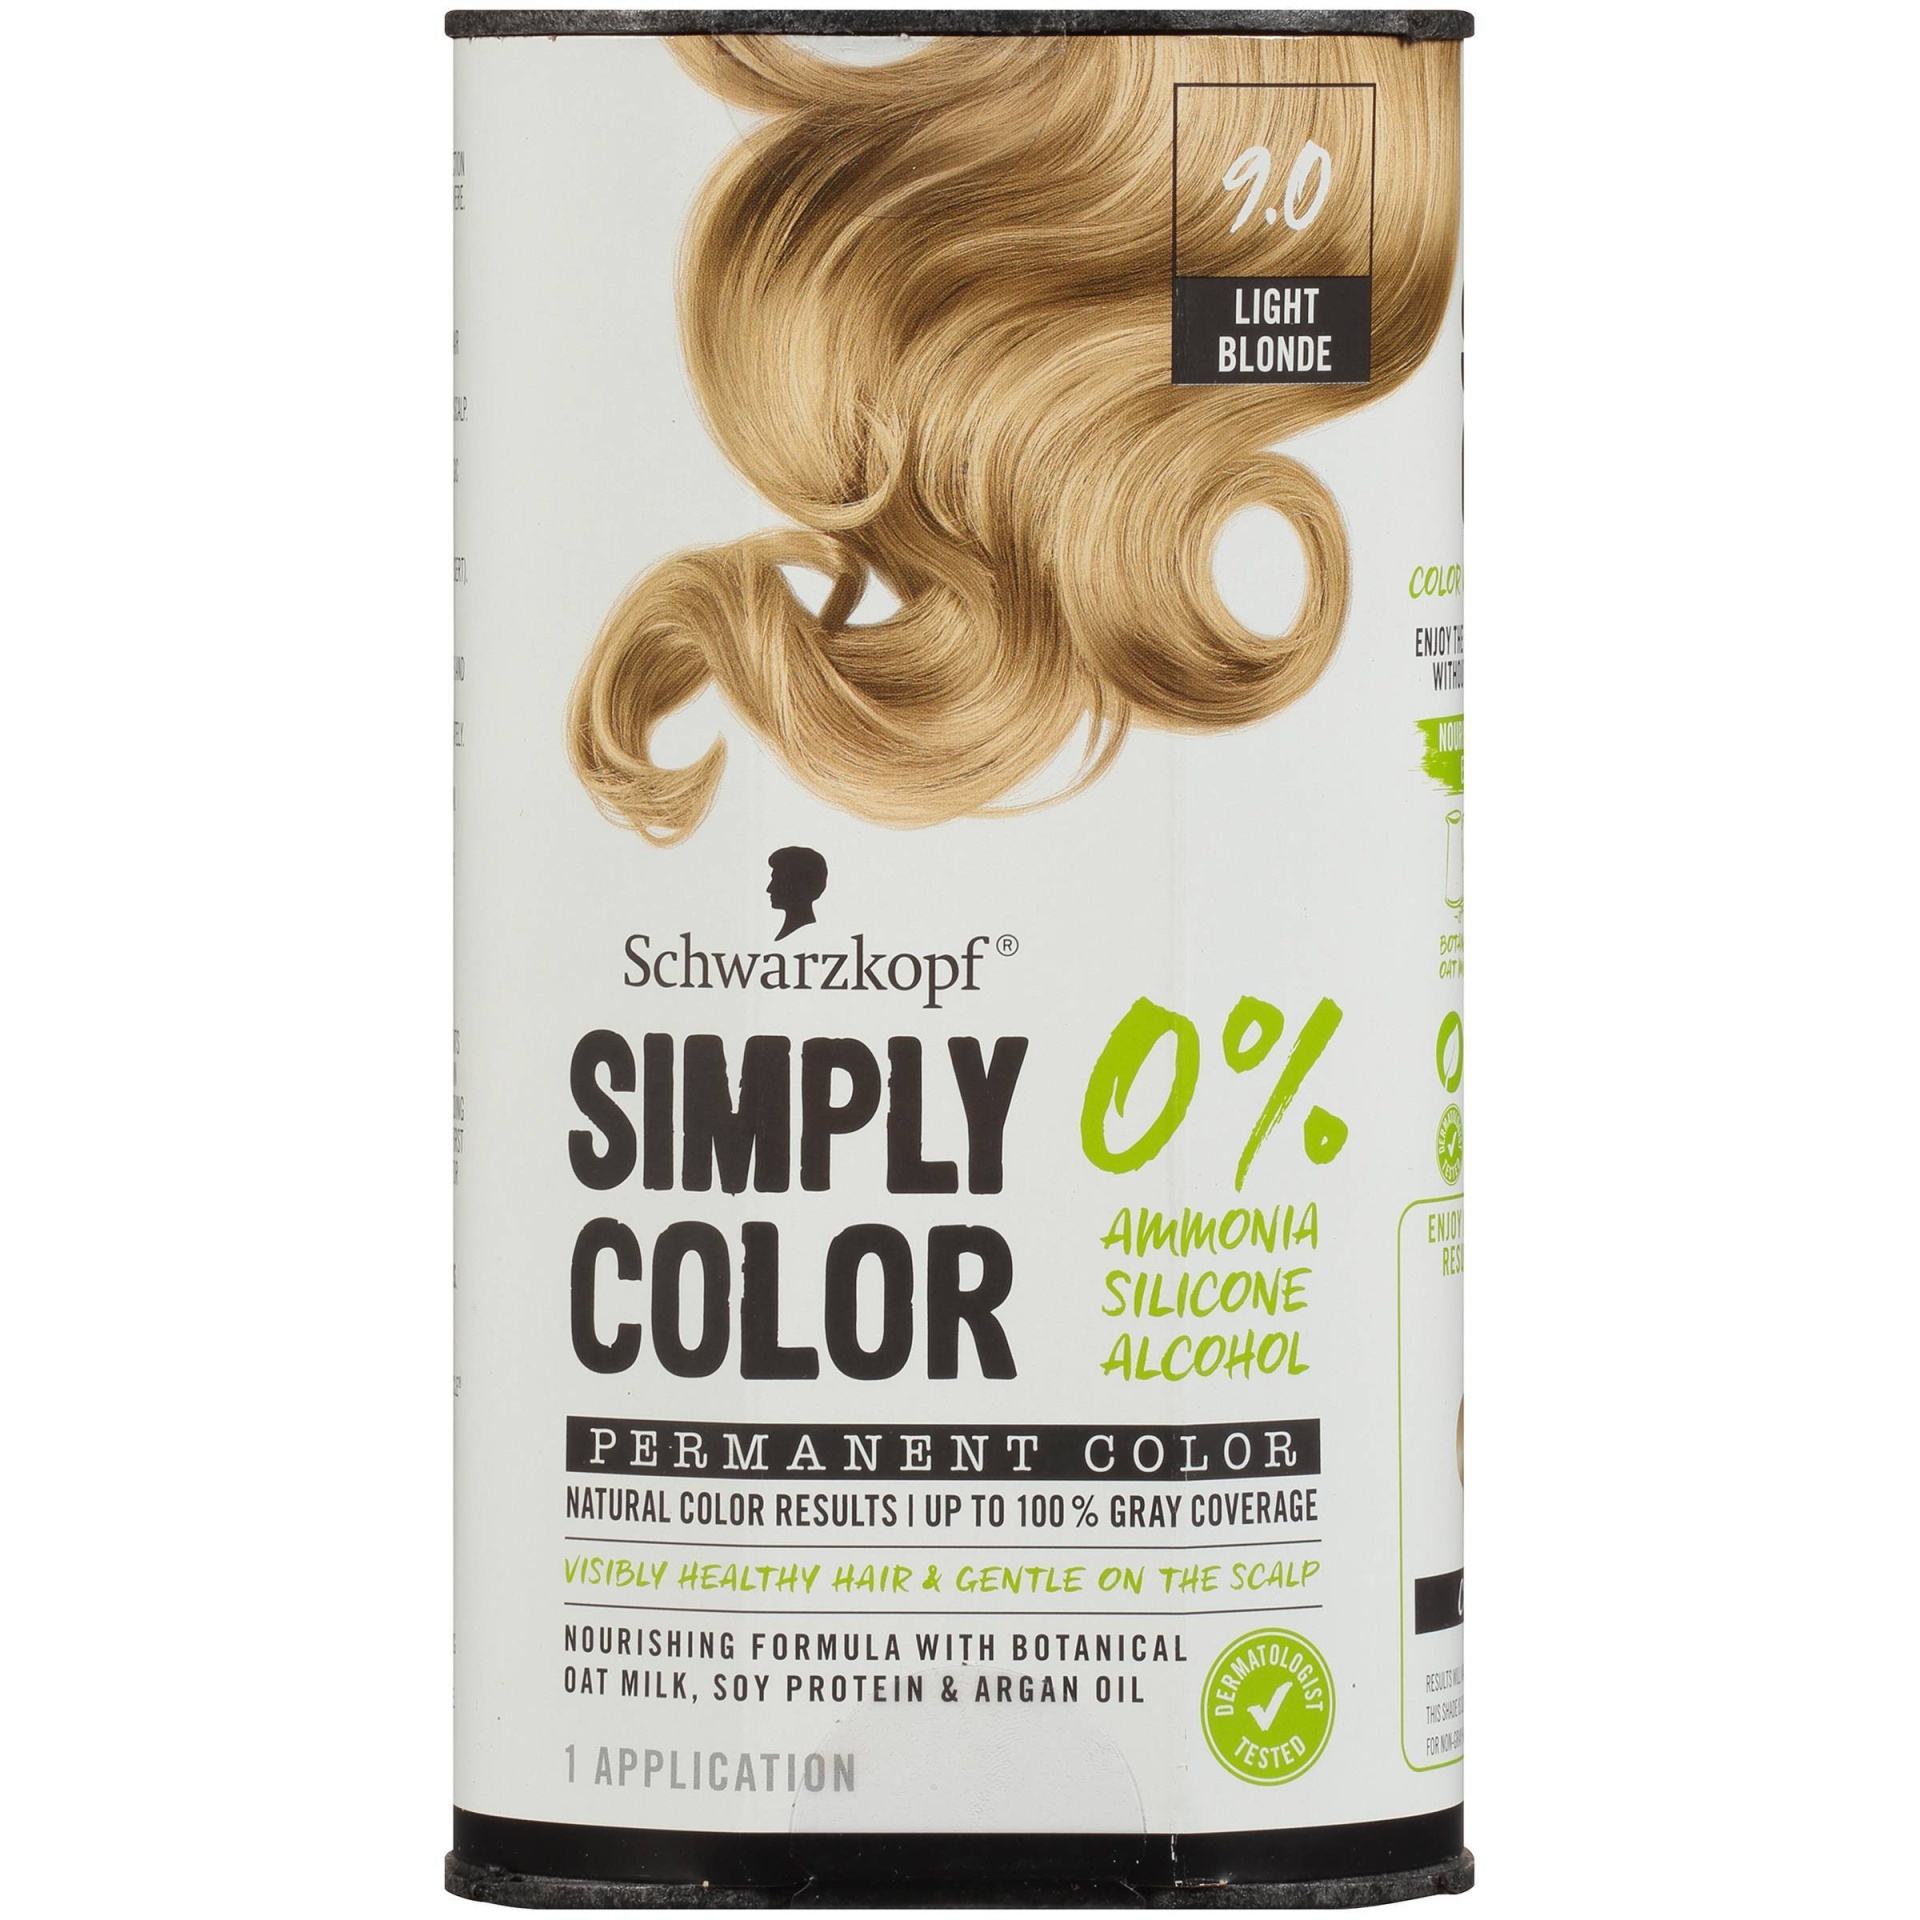 Schwarzkopf Simply Color Permanent Hair Color,  Light Blonde  fl oz |  Shipt